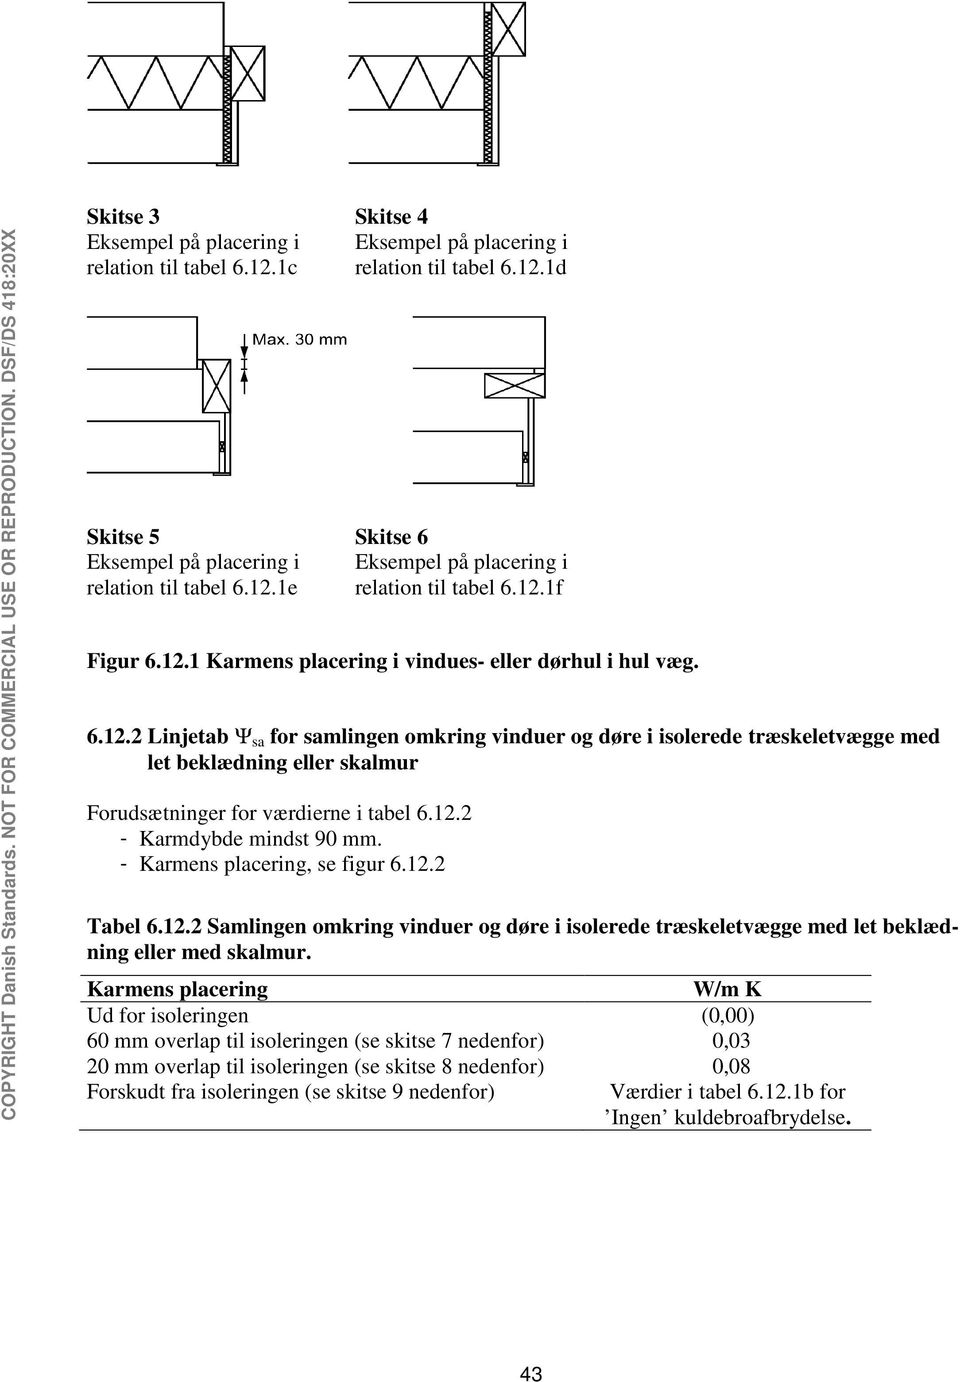 12.2 - Karmdybde mindst 90 mm. - Karmens placering, se figur 6.12.2 Tabel 6.12.2 Samlingen omkring vinduer og døre i isolerede træskeletvægge med let beklædning eller med skalmur.